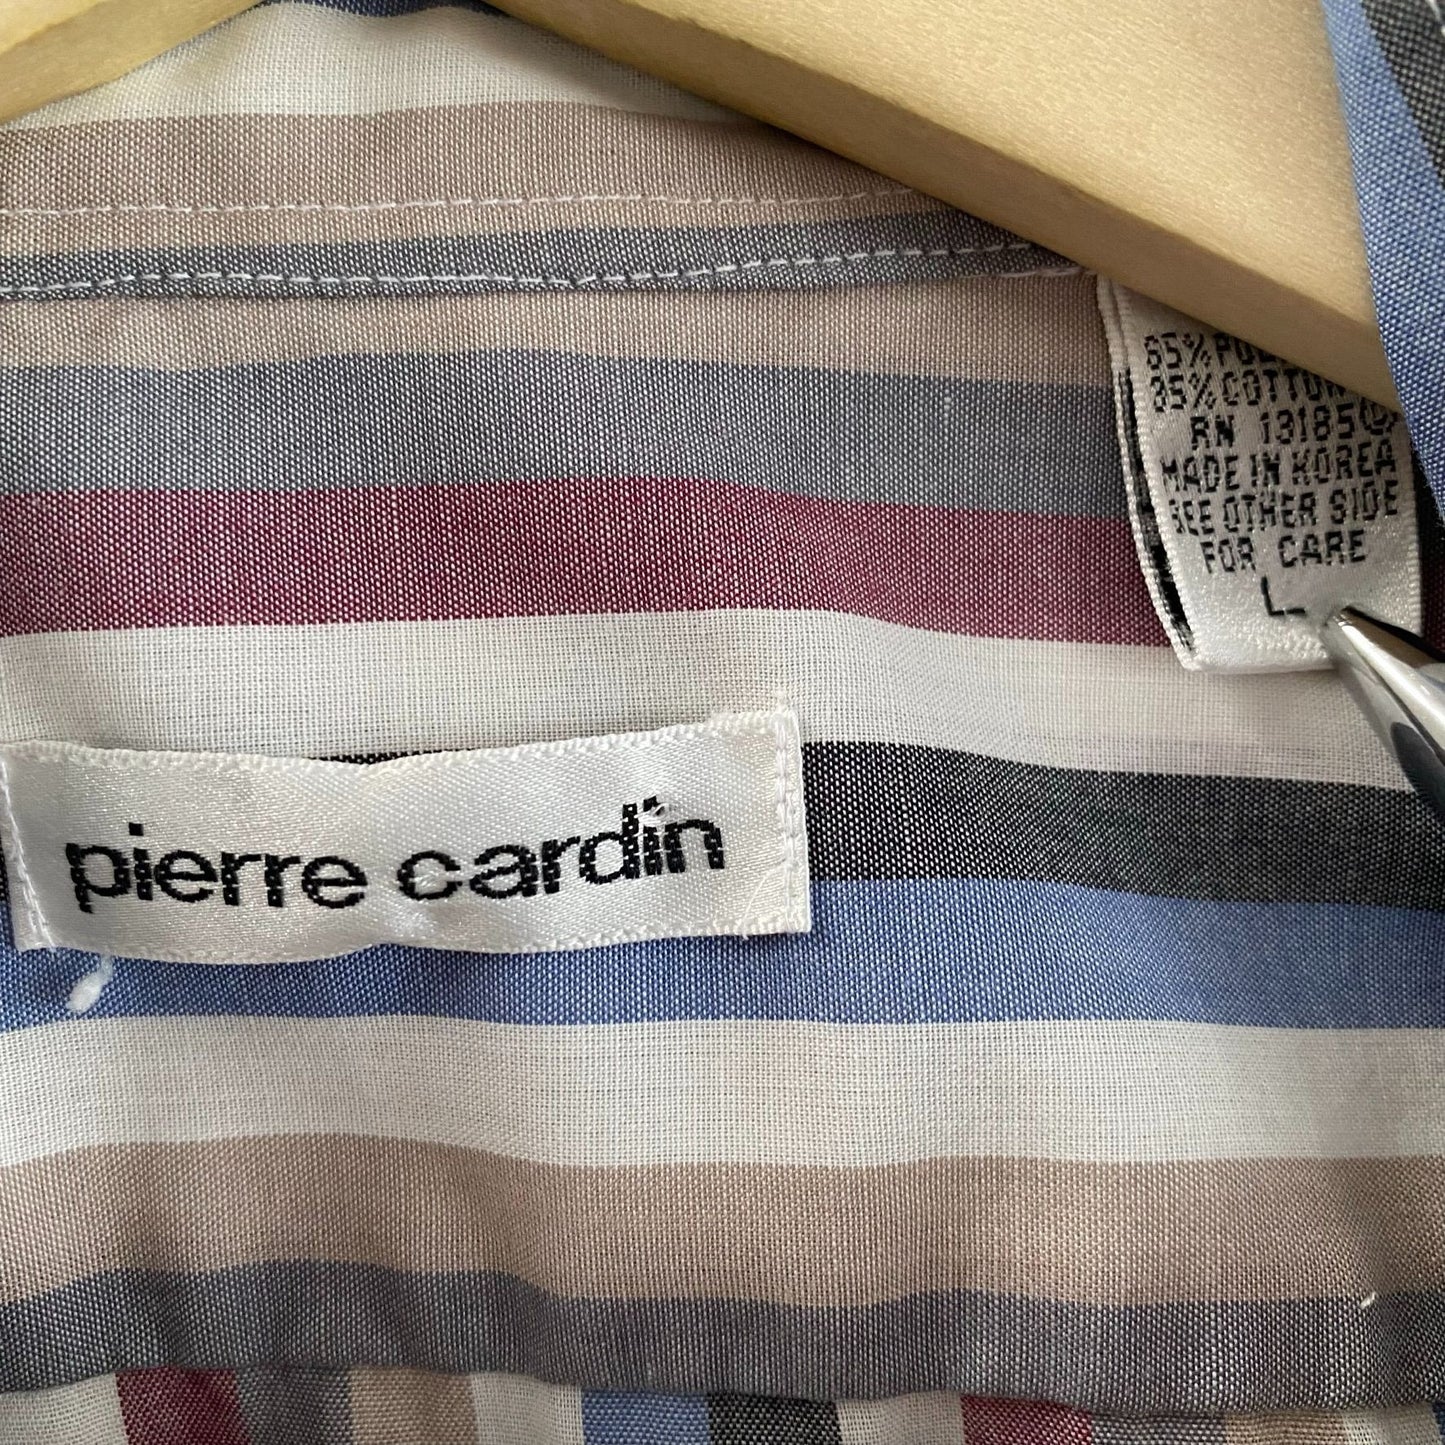 Pierre Cardin Striped S/S Shirt